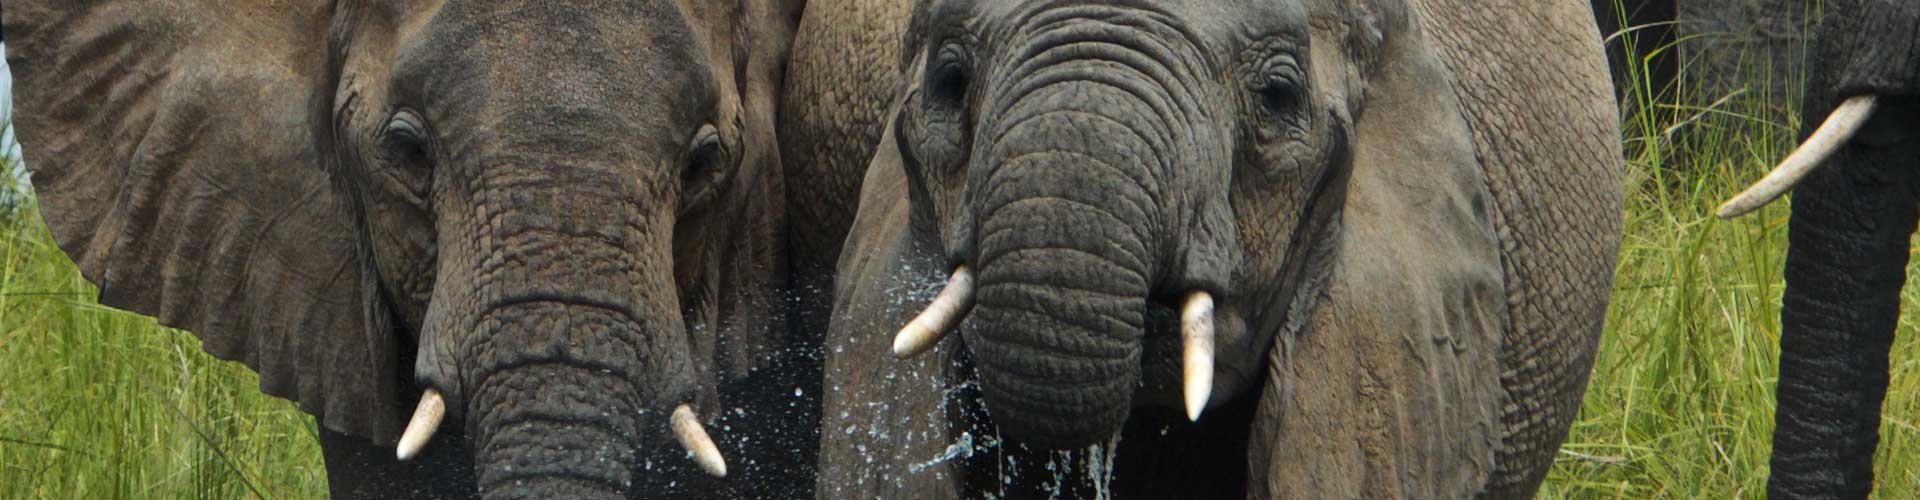 Elefanten im Queen Elizabeth National Park in Uganda